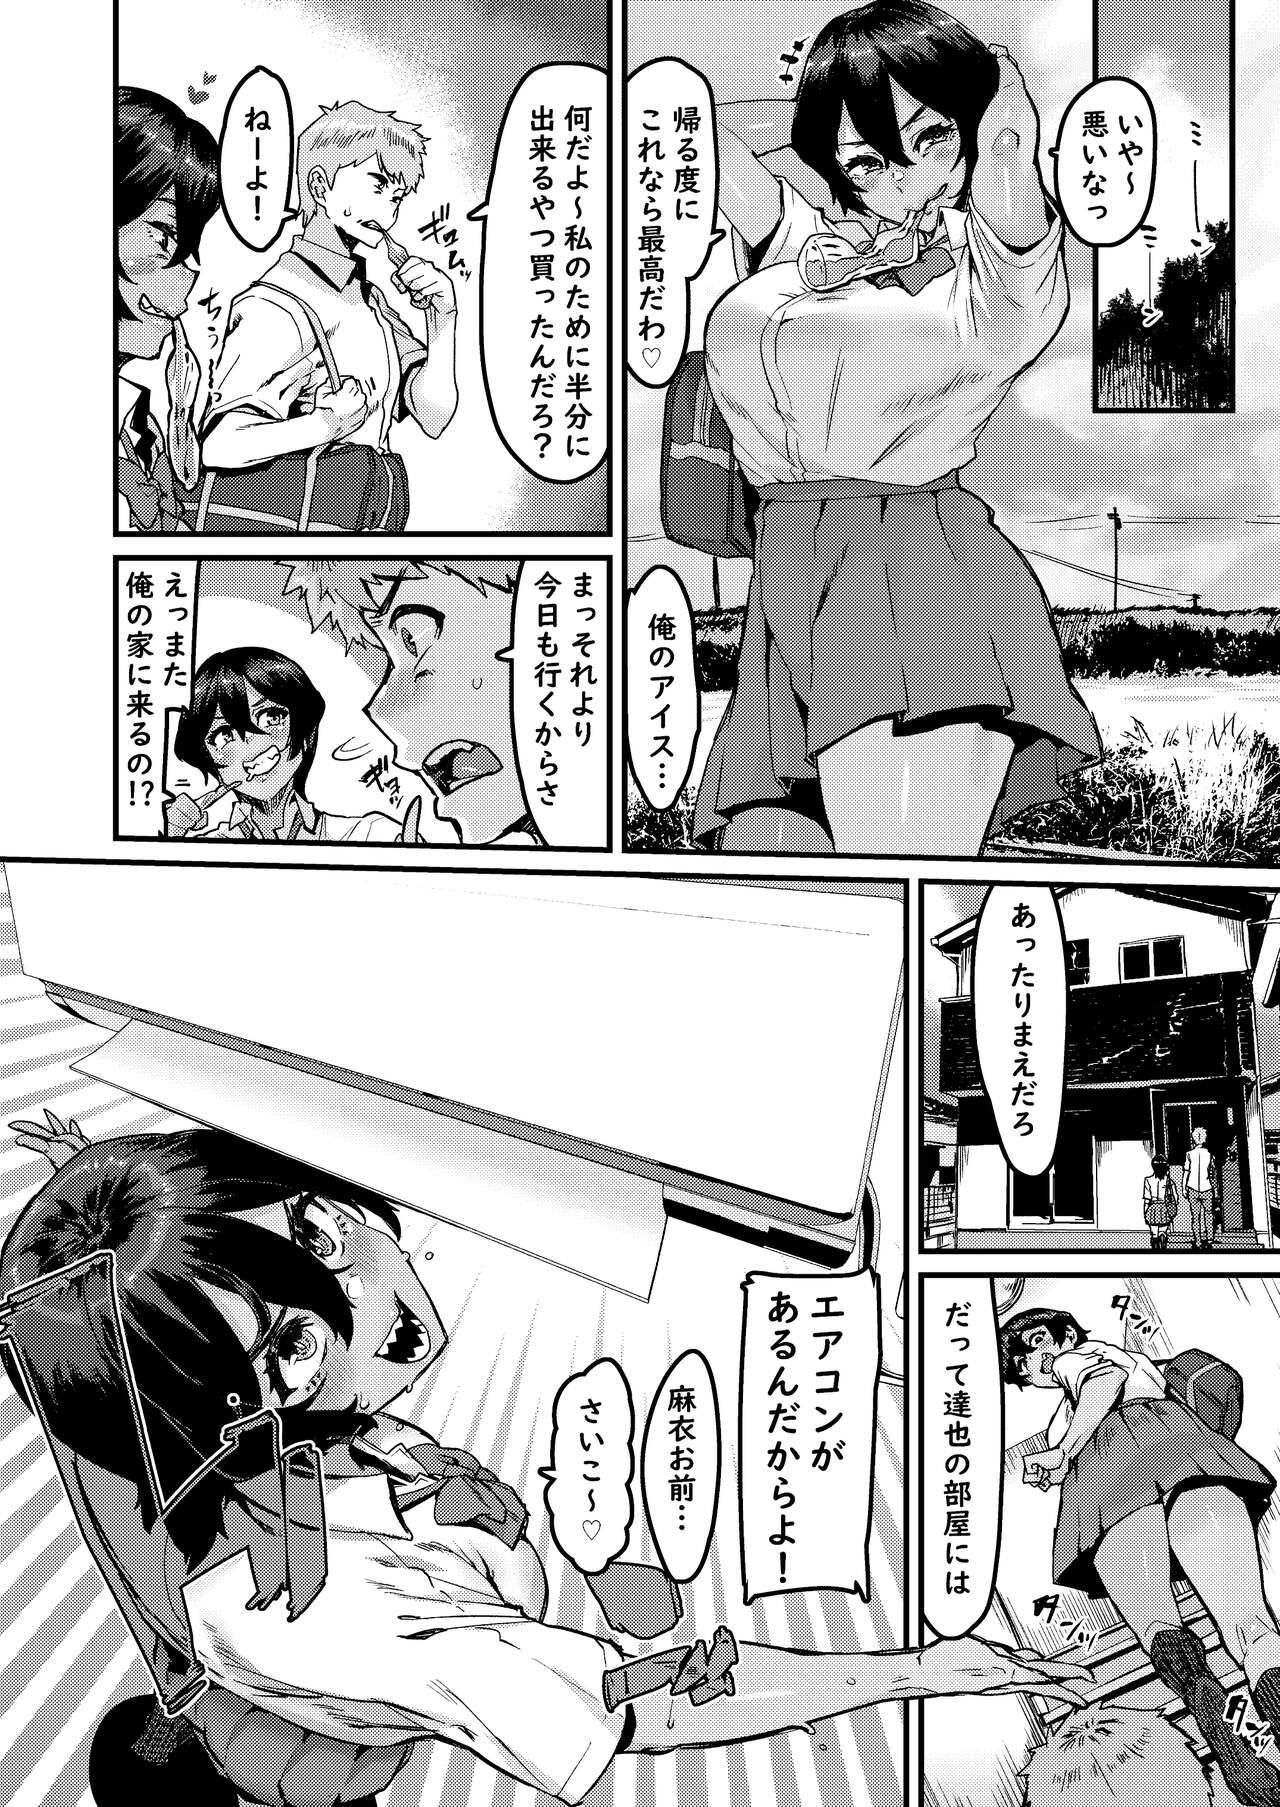 Girlfriend no Hou ga Zutto Mae kara Suki datta noni - Original Milk - Page 4